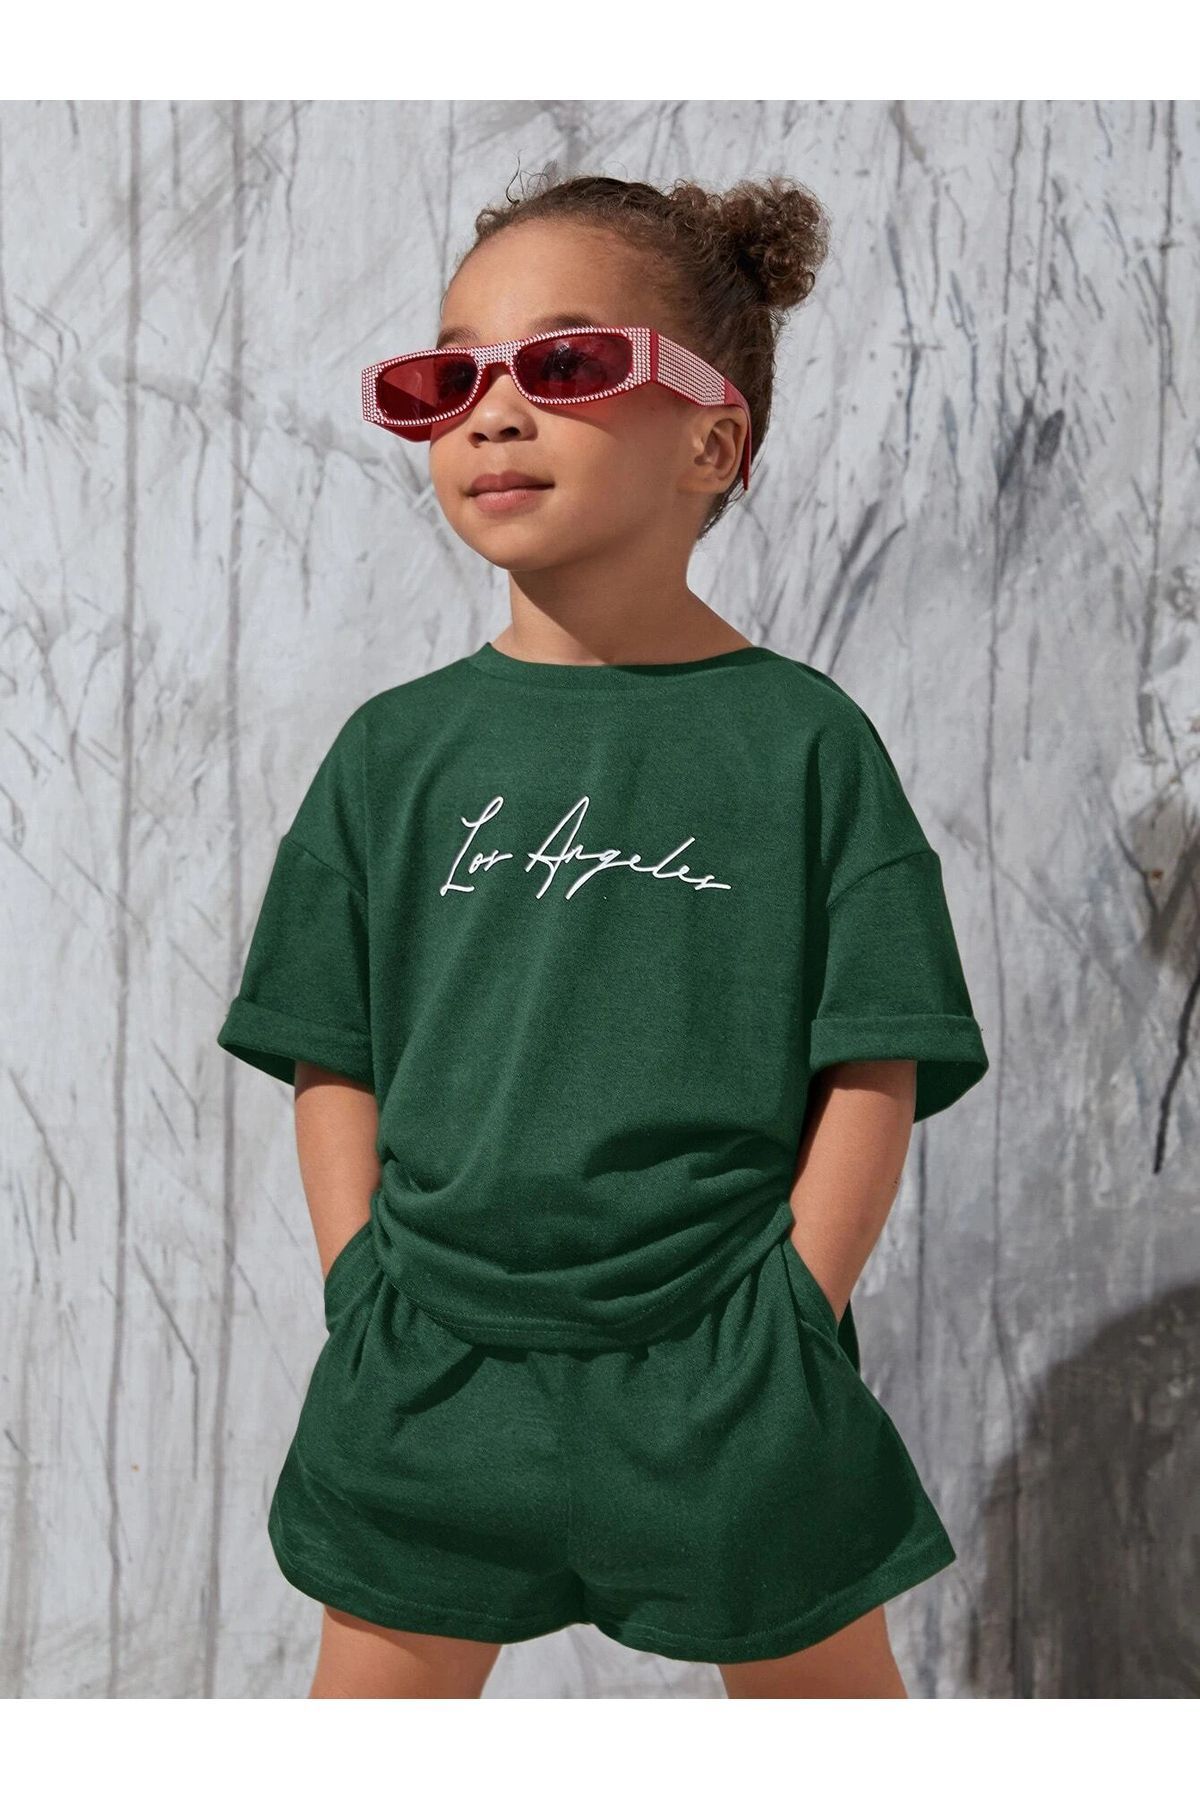 DUBU BUTİK Los Angeles Yazı Baskılı Nefti Yeşil Çocuk Şort T-shirt Takım-kız Erkek Çocuk Yazlık